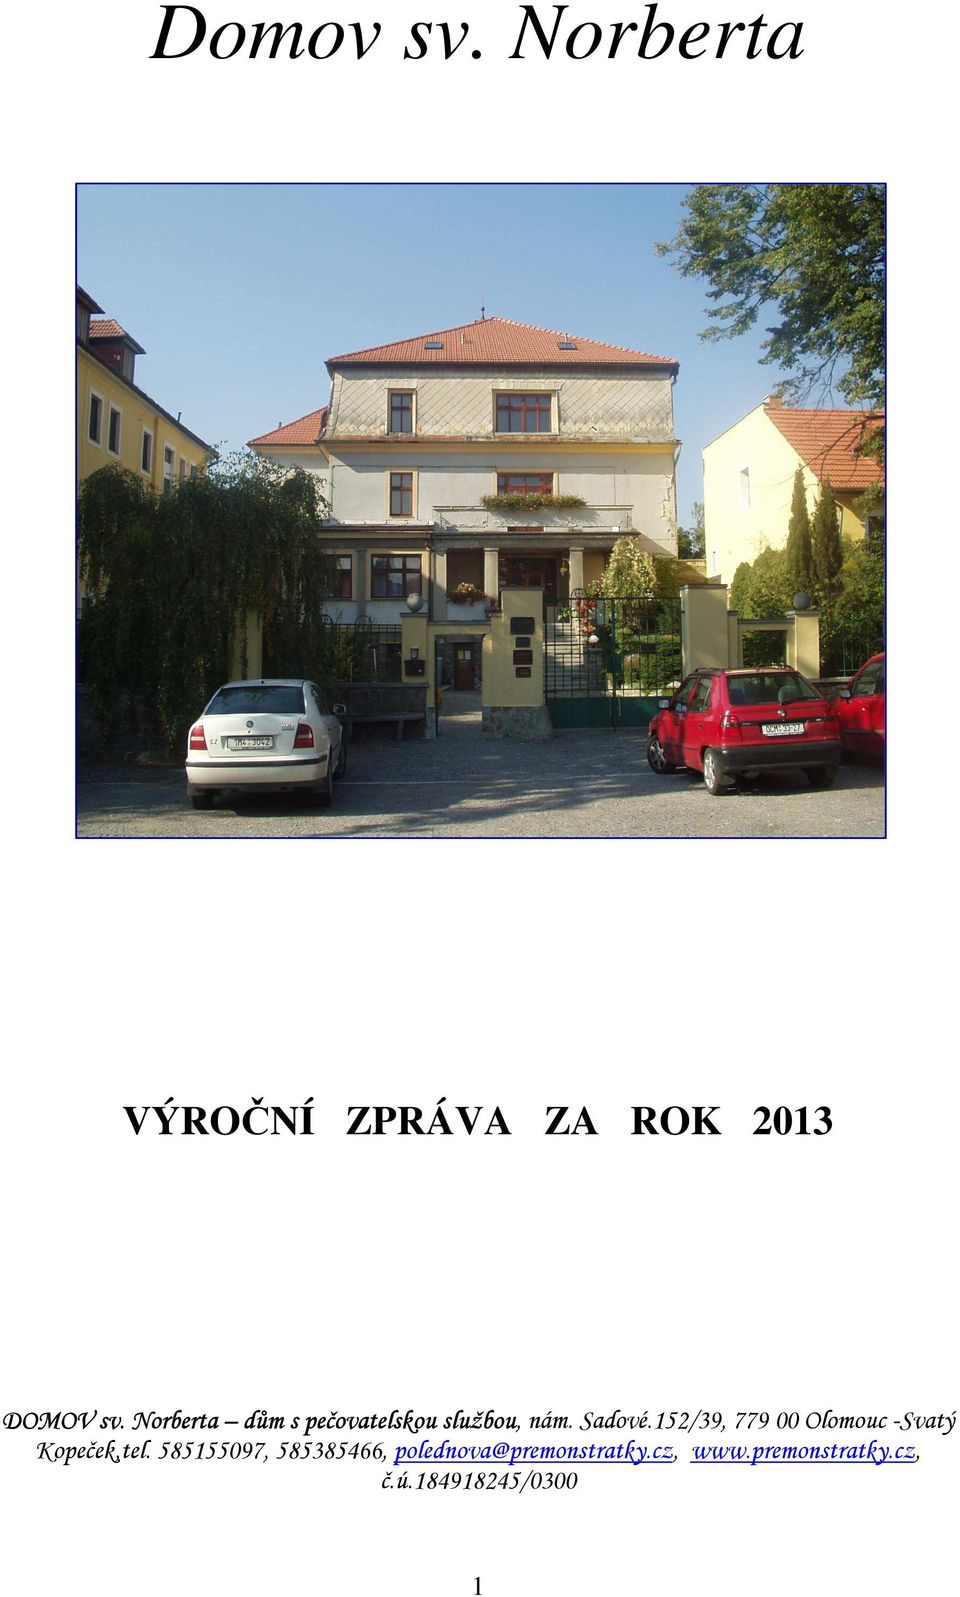 152/39, 779 00 Olomouc -Svatý Kopeček,tel.